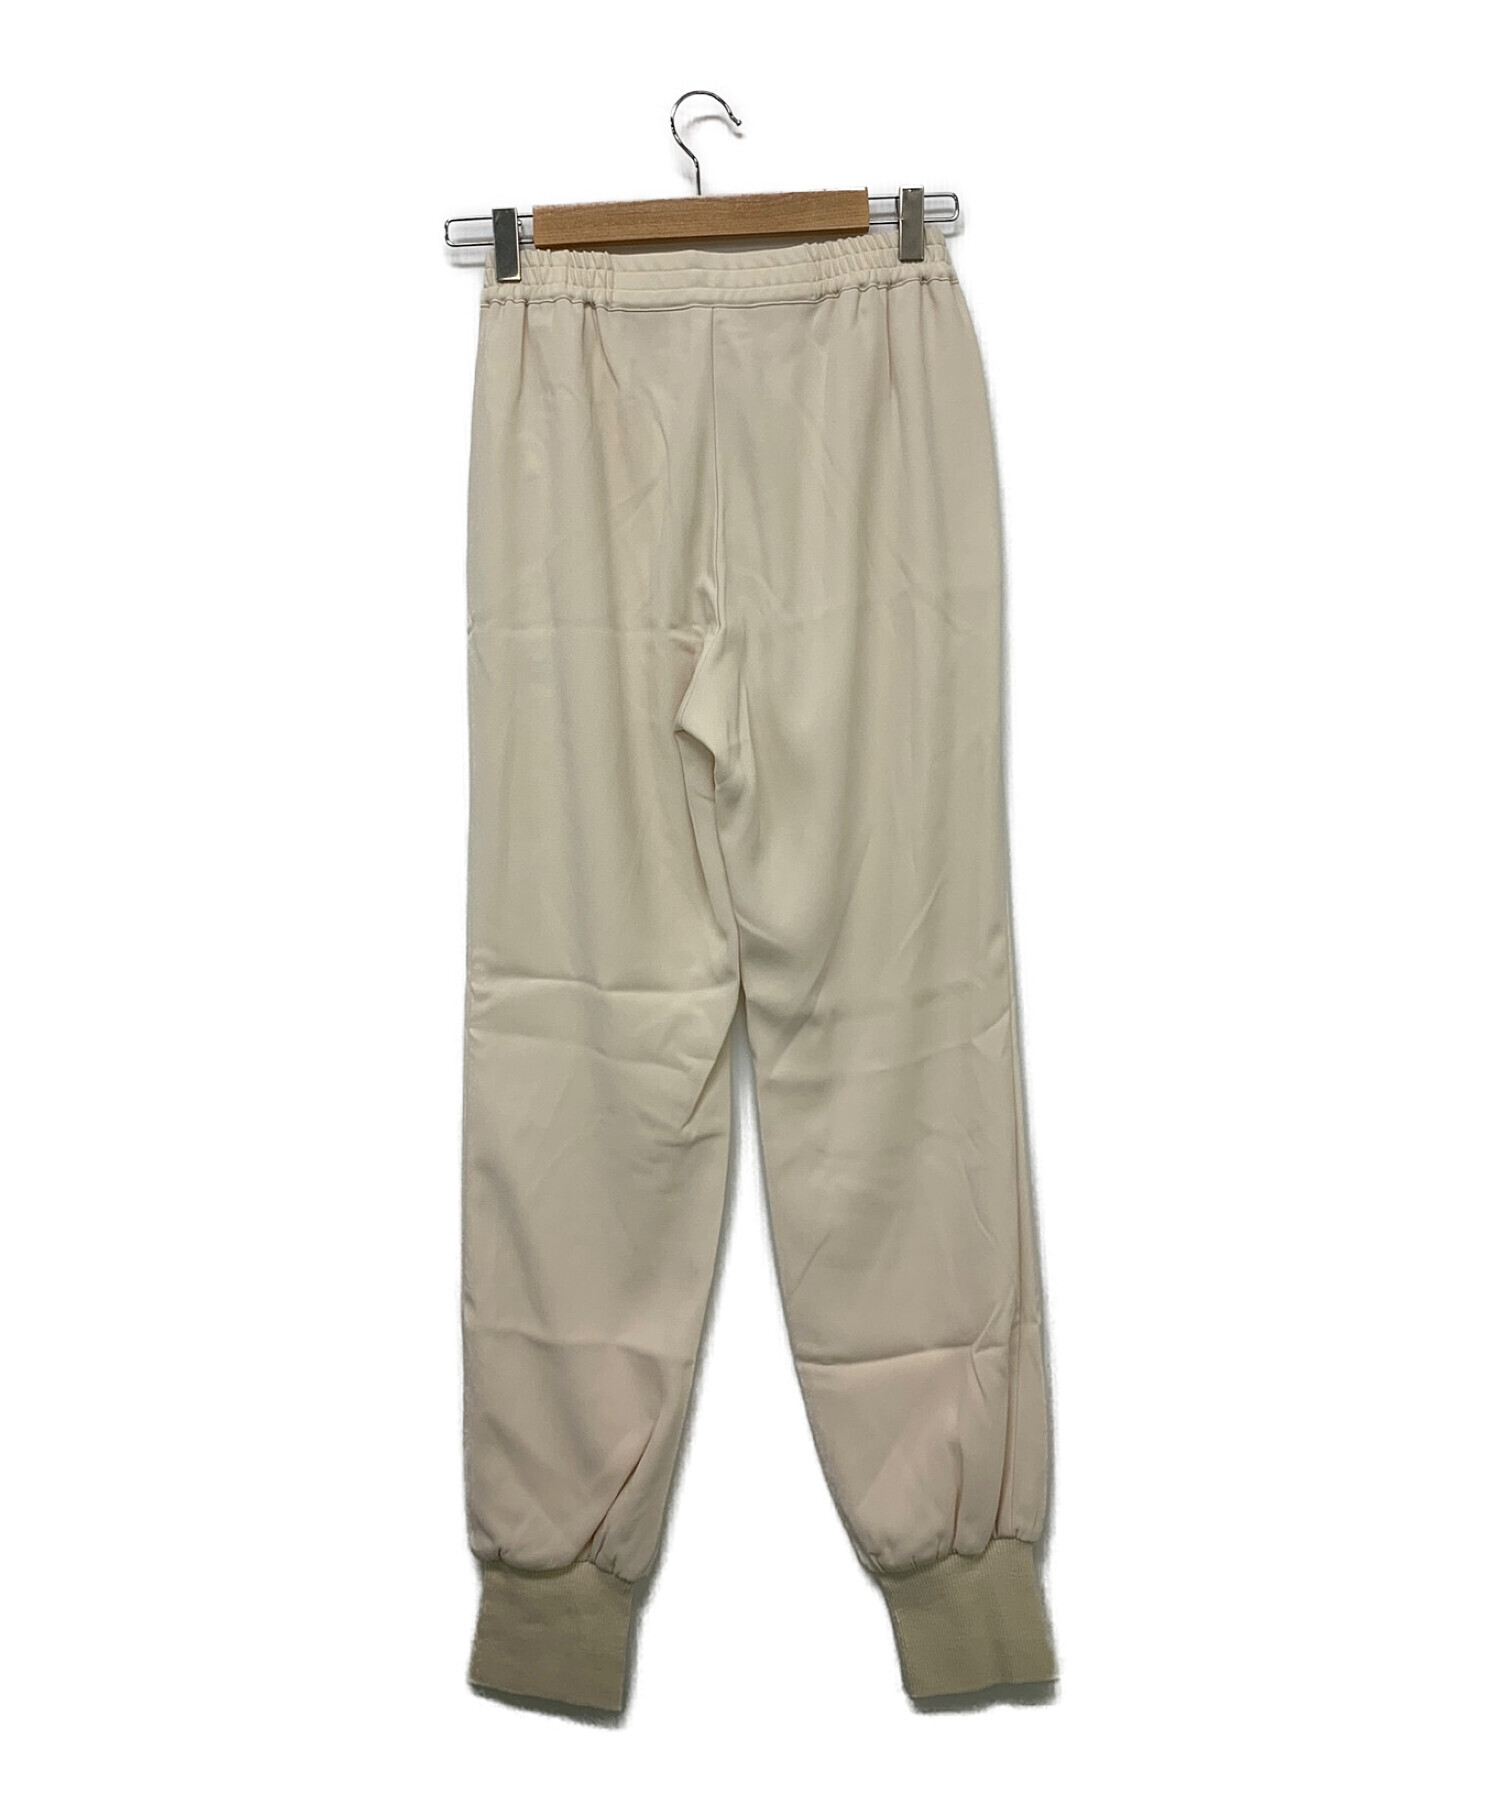 驚きの破格値SALERib Pants(WH)リブパンツ カジュアルパンツ